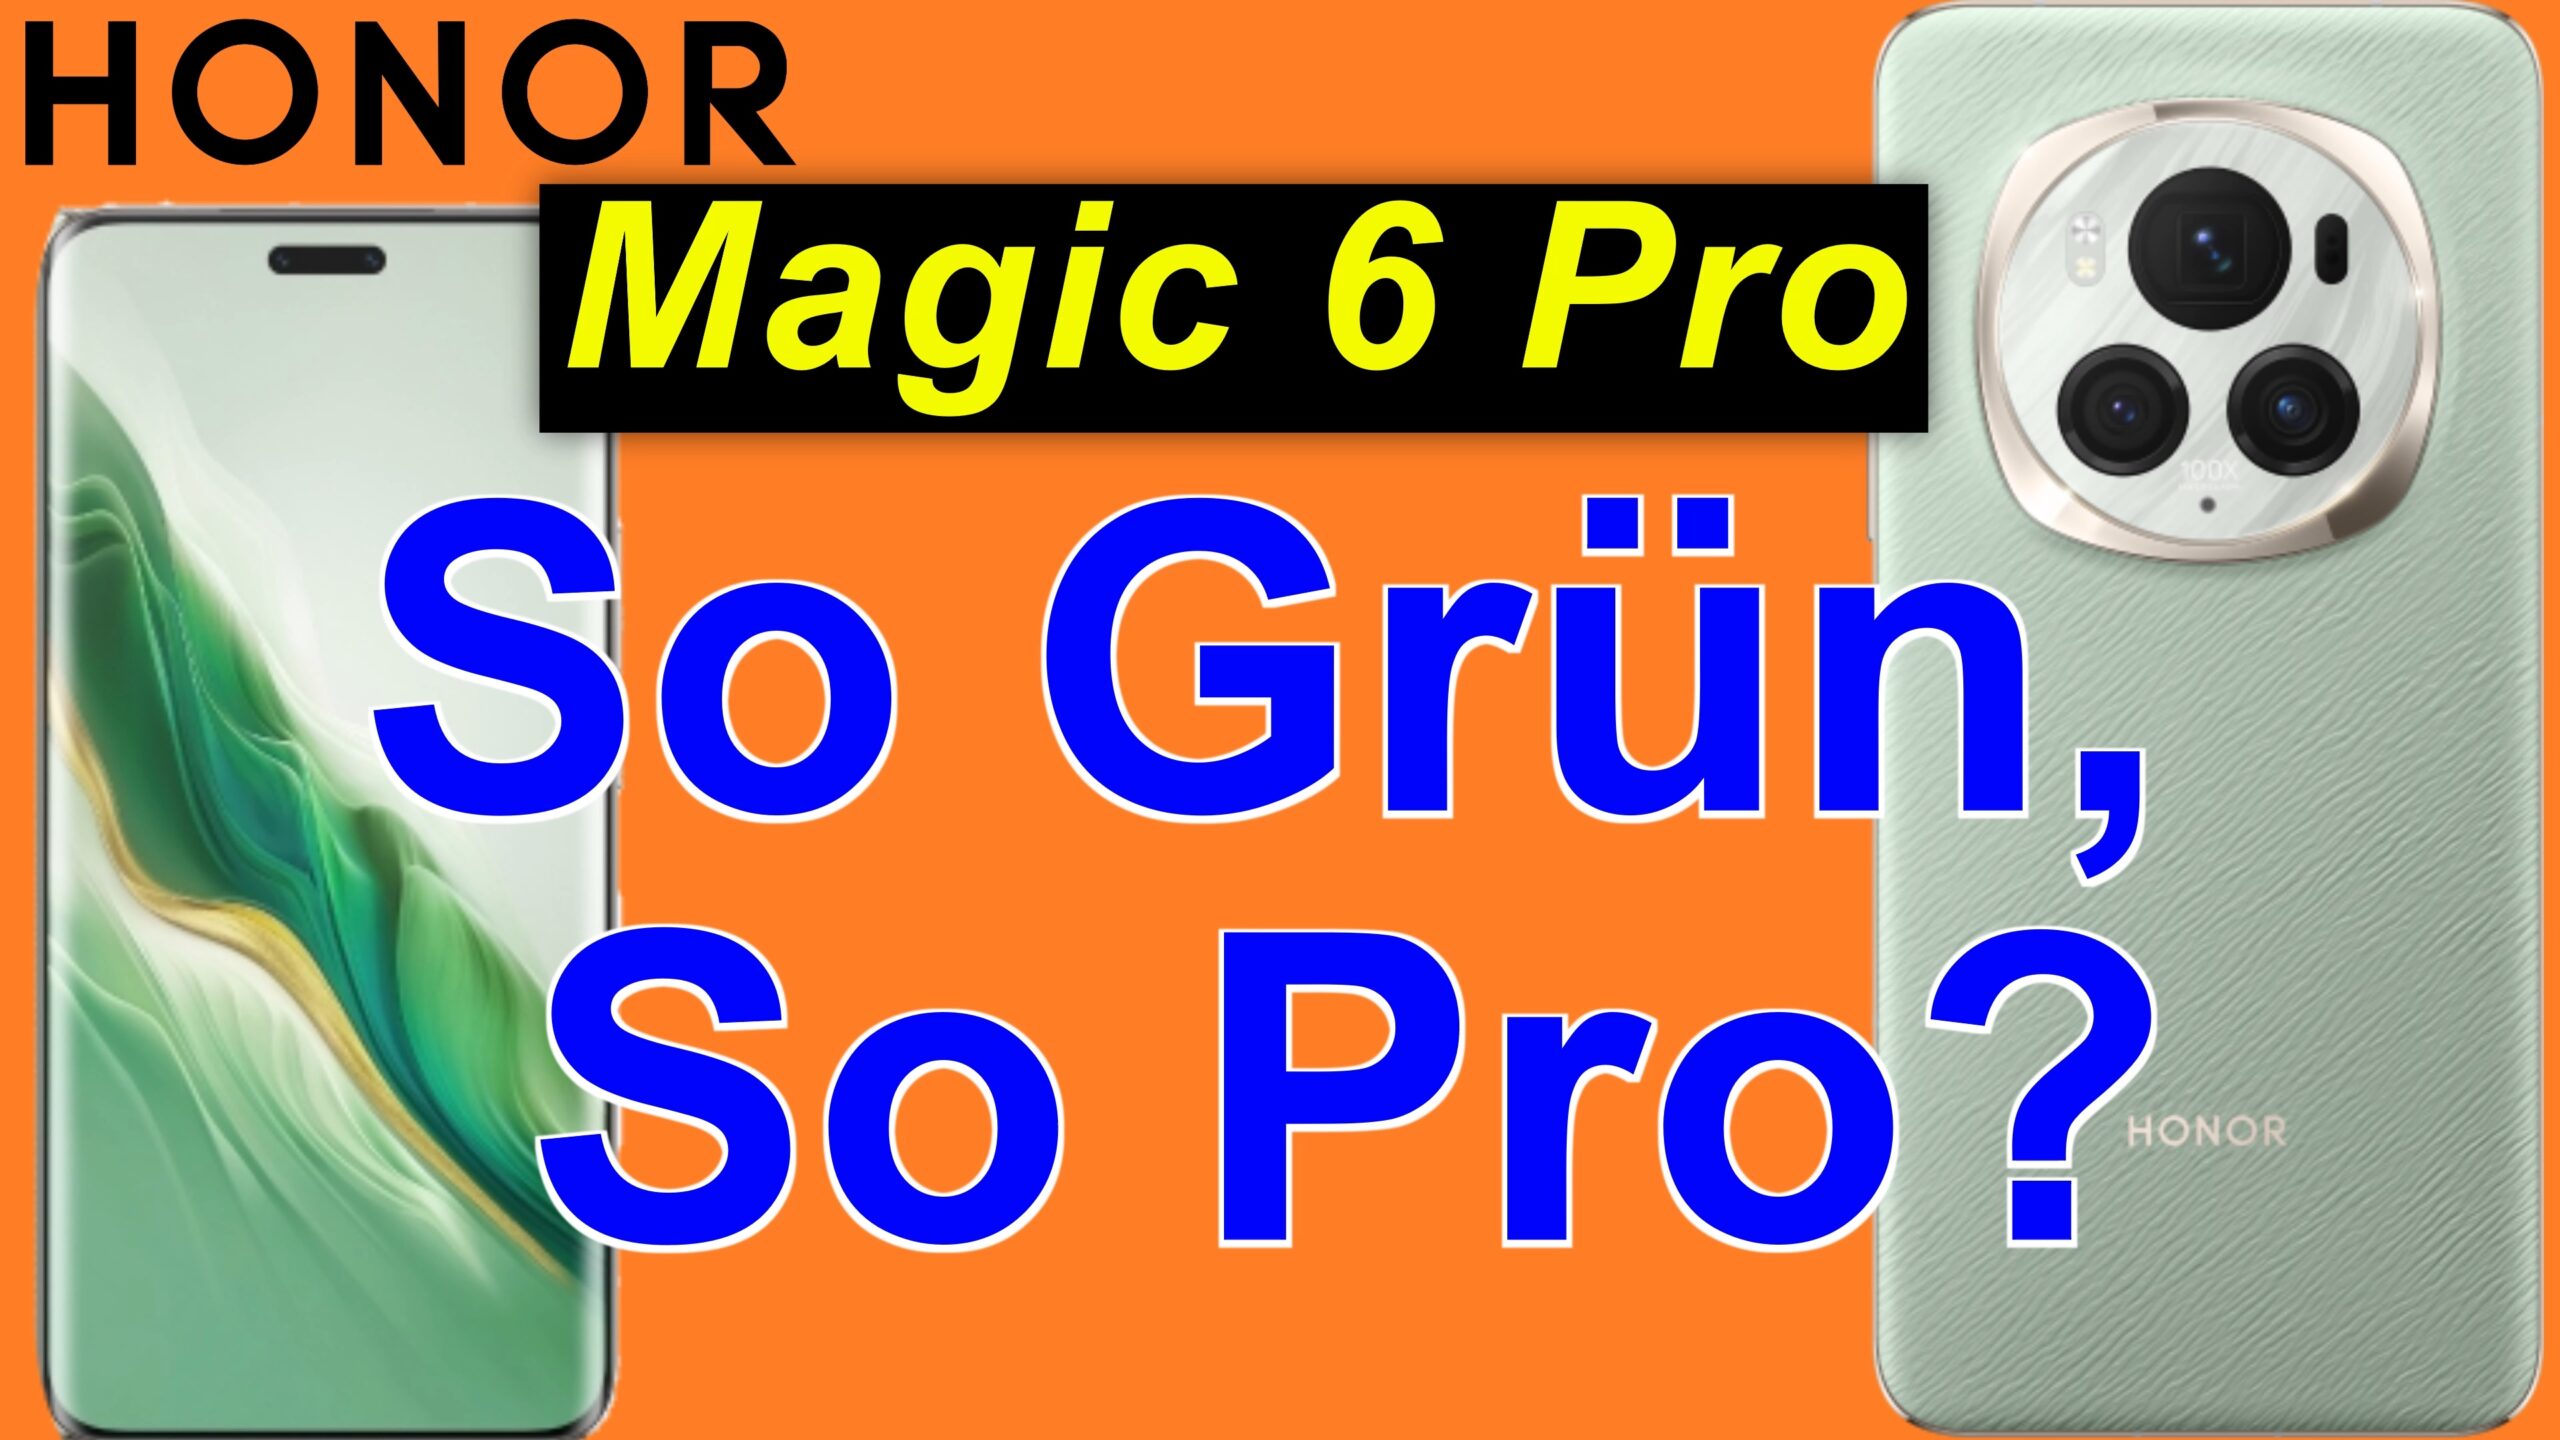 Honor Magic 6 Pro - auspacken und Ersteindruck